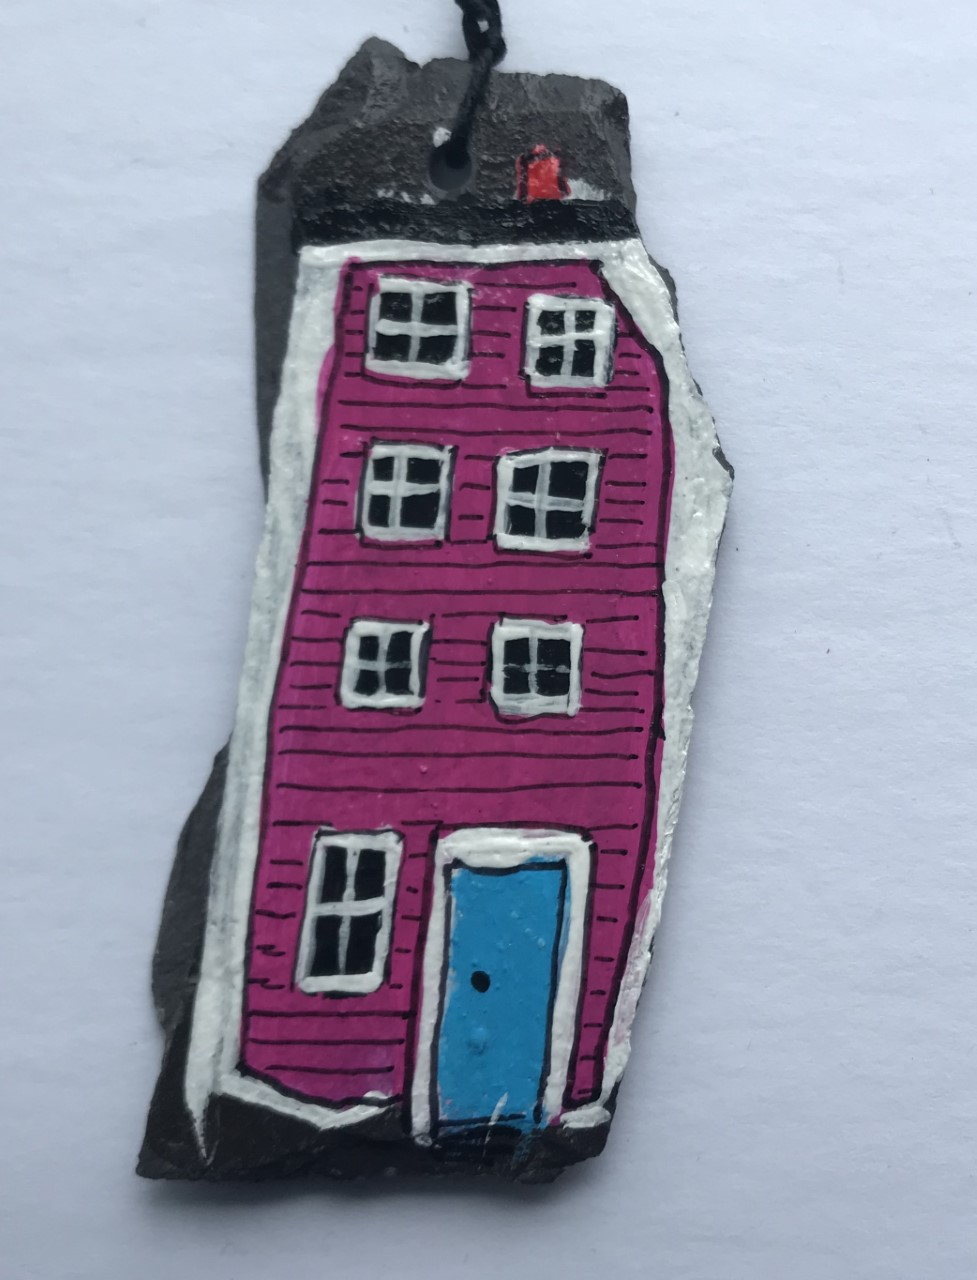 Newfoundland Slate Row Houses